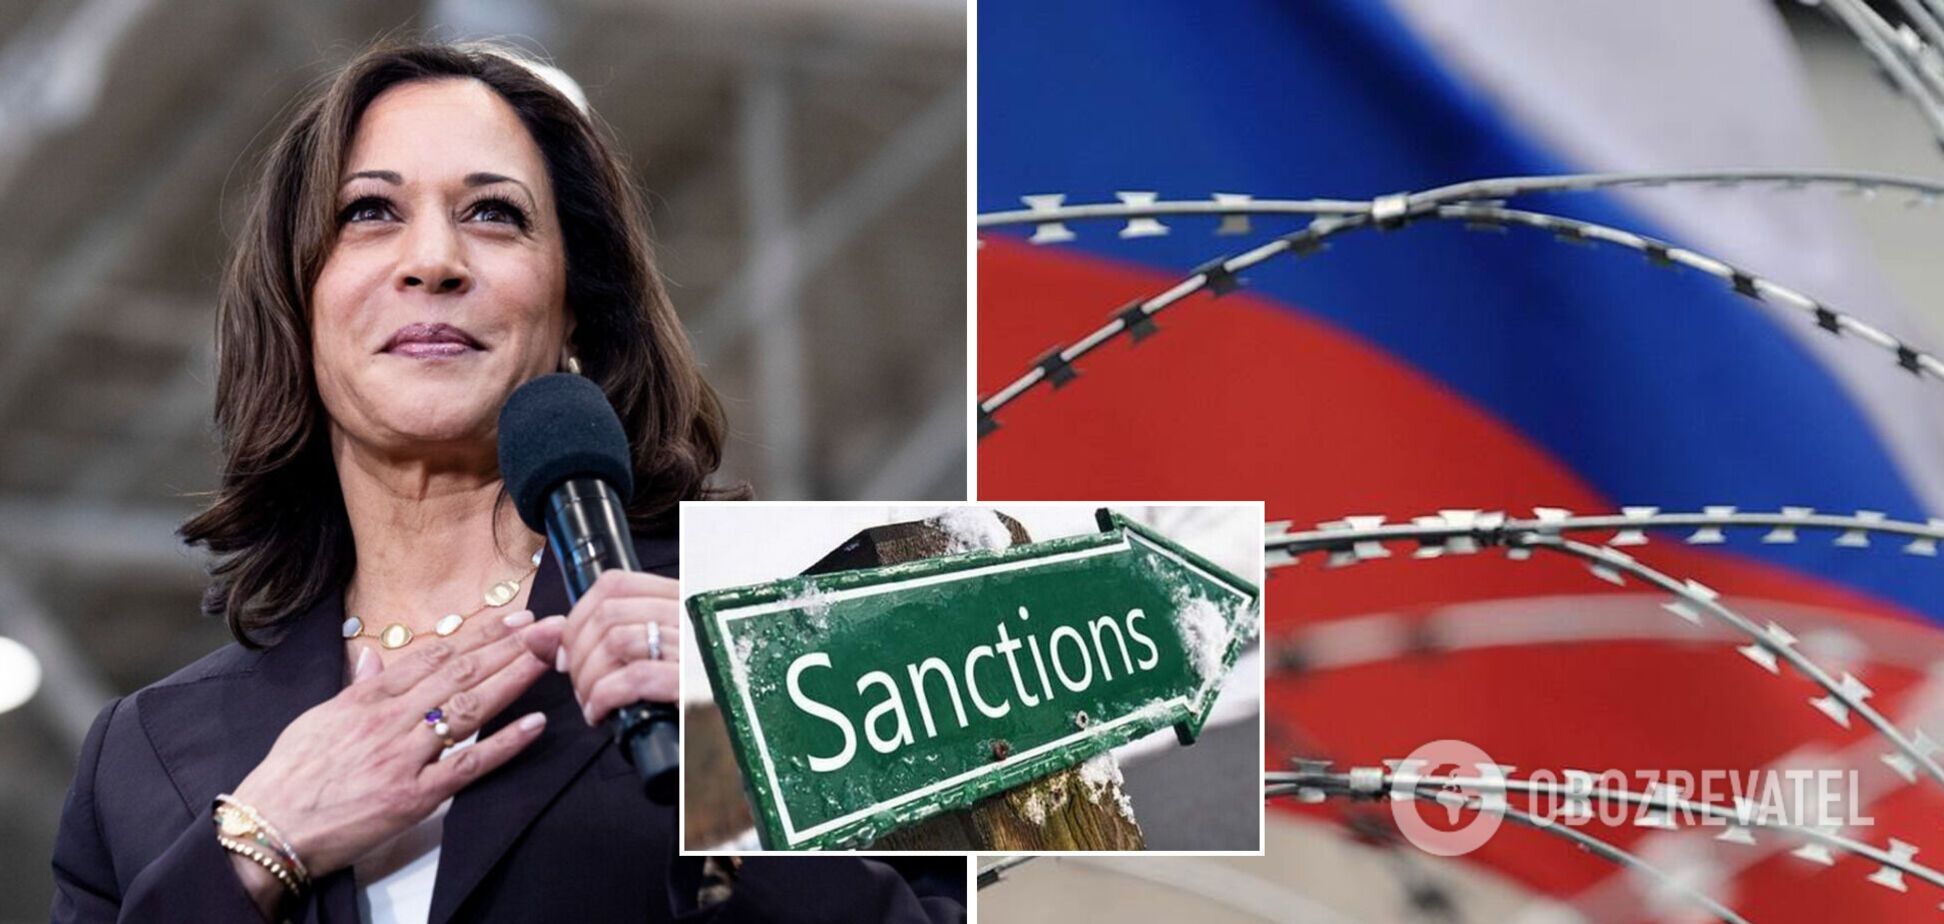 Віцепрезидентка США пригрозила Кремлю 'безпрецедентними' санкціями та пообіцяла підтримку Україні. Відео